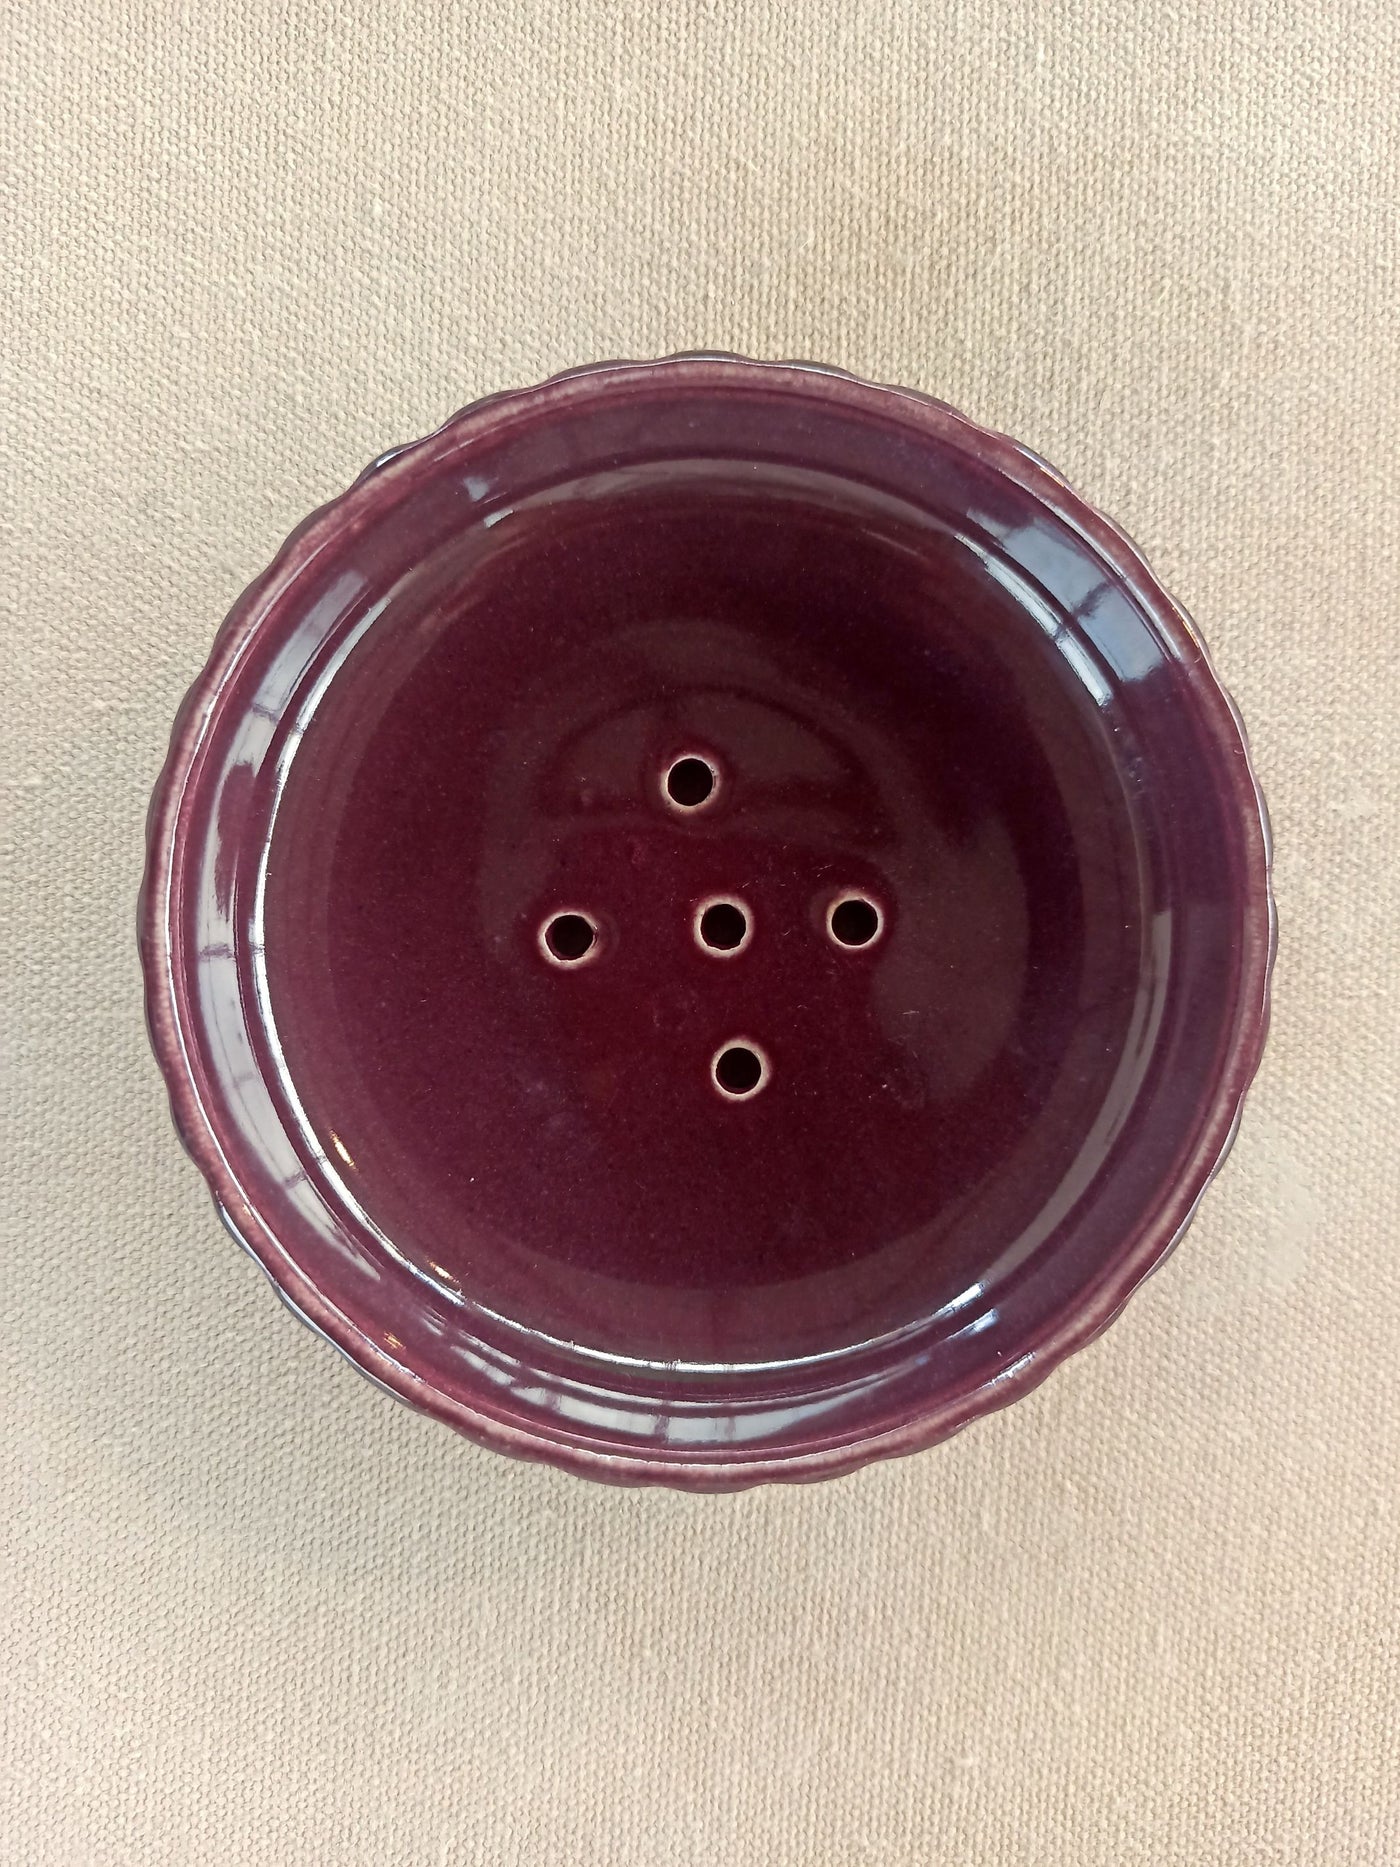 Button soap dish